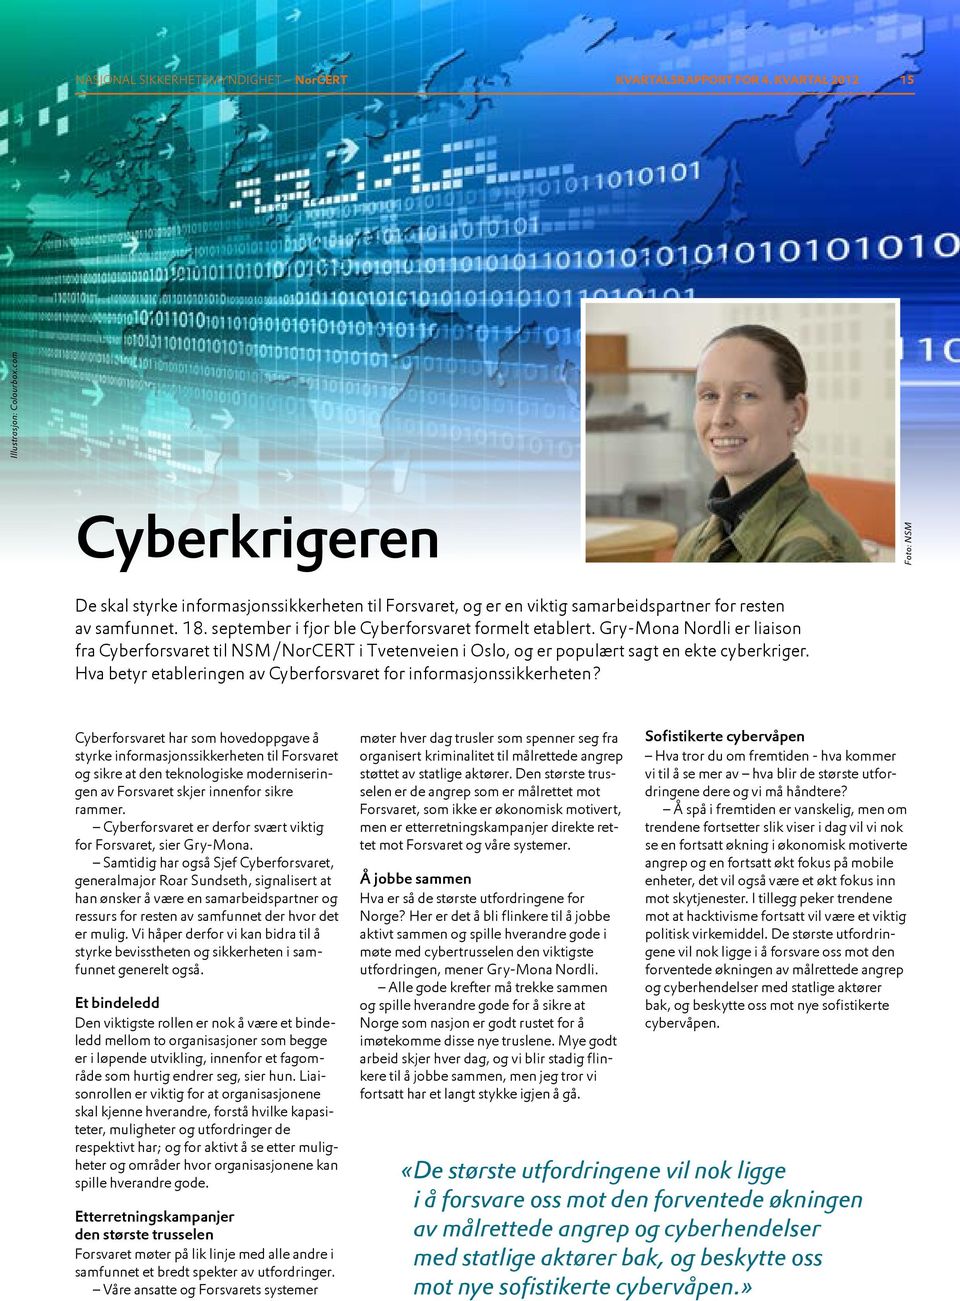 Gry-Mona Nordli er liaison fra Cyberforsvaret til NSM/NorCERT i Tvetenveien i Oslo, og er populært sagt en ekte cyberkriger. Hva betyr etableringen av Cyberforsvaret for informasjonssikkerheten?